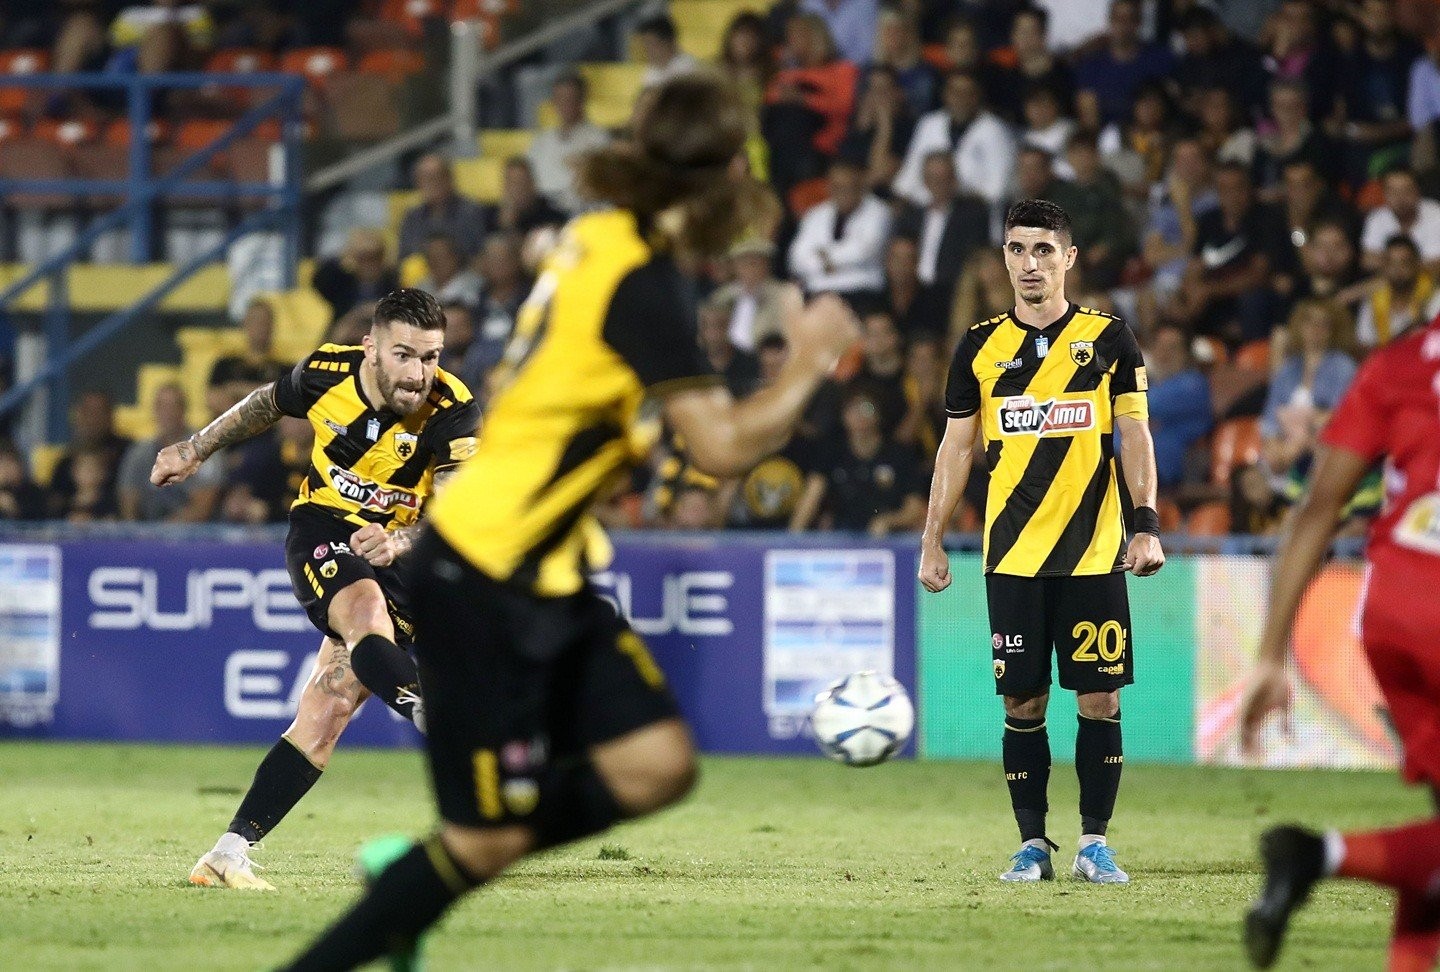 Super League, Αστέρας Τρίπολης-Πανιώνιος 3-0: Τέλος καλό 